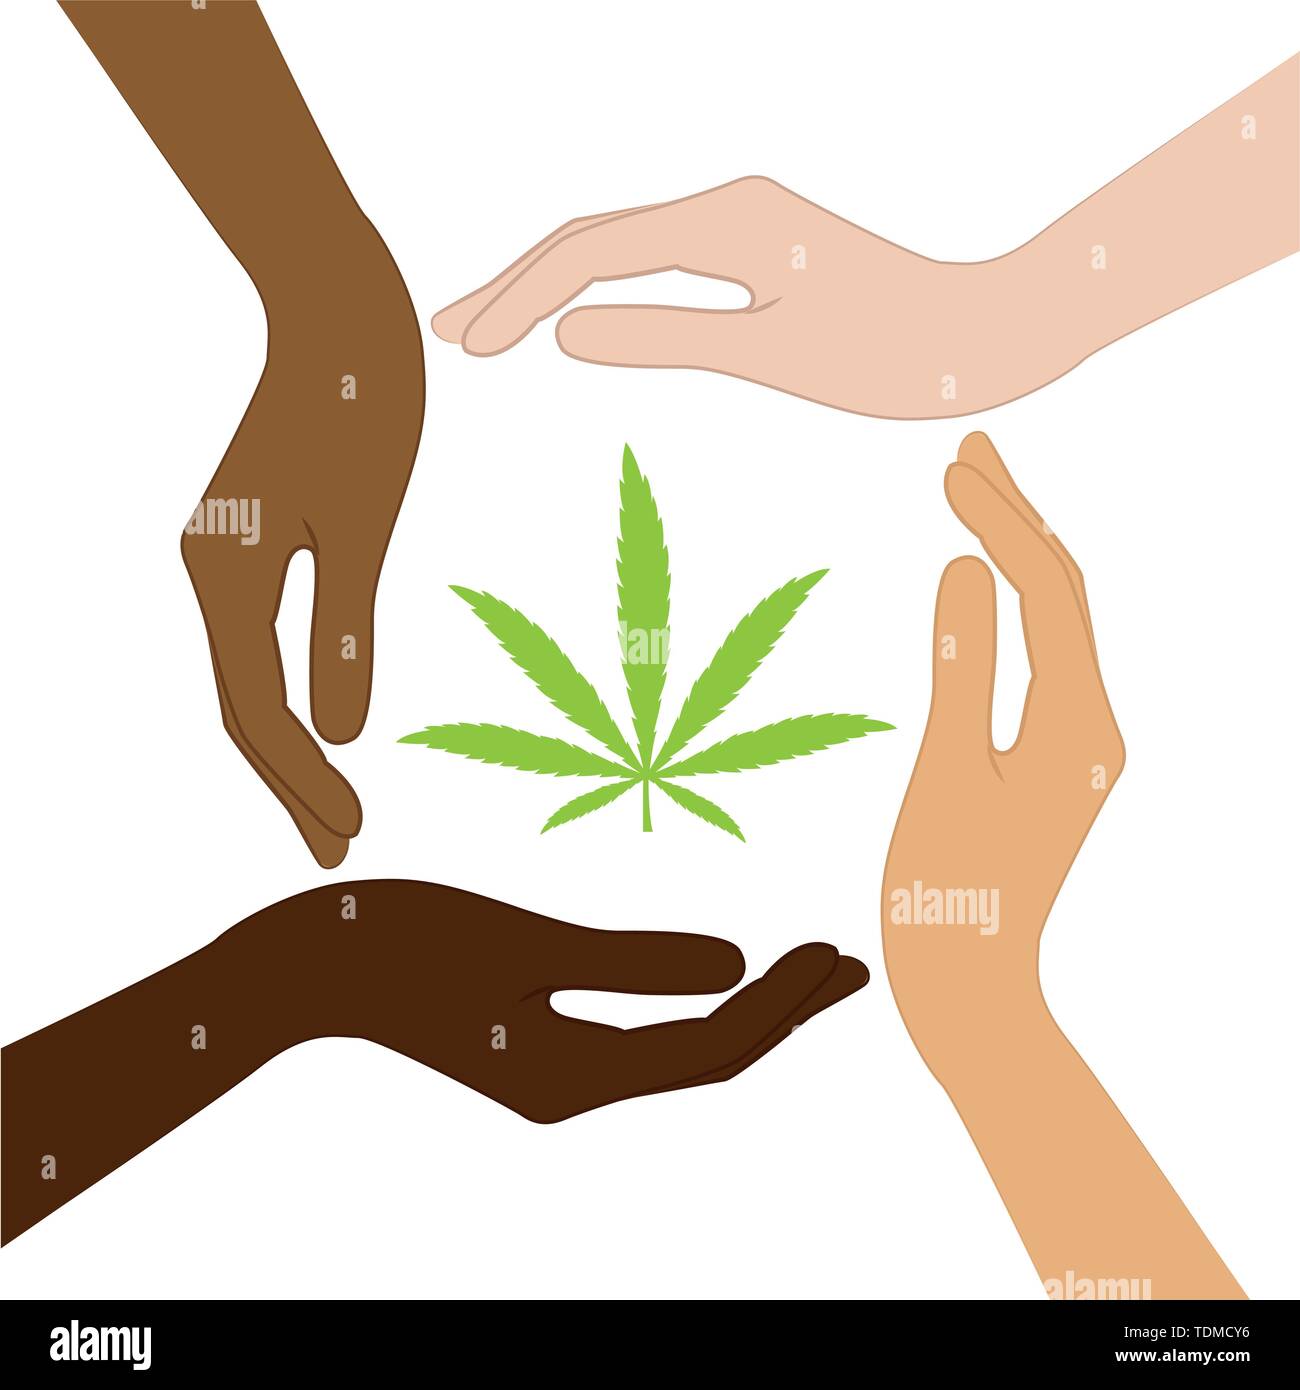 Cannabis Blatt in der Mitte der Hände mit unterschiedlichen Hautfarben Vektor-illustration EPS 10. Stock Vektor